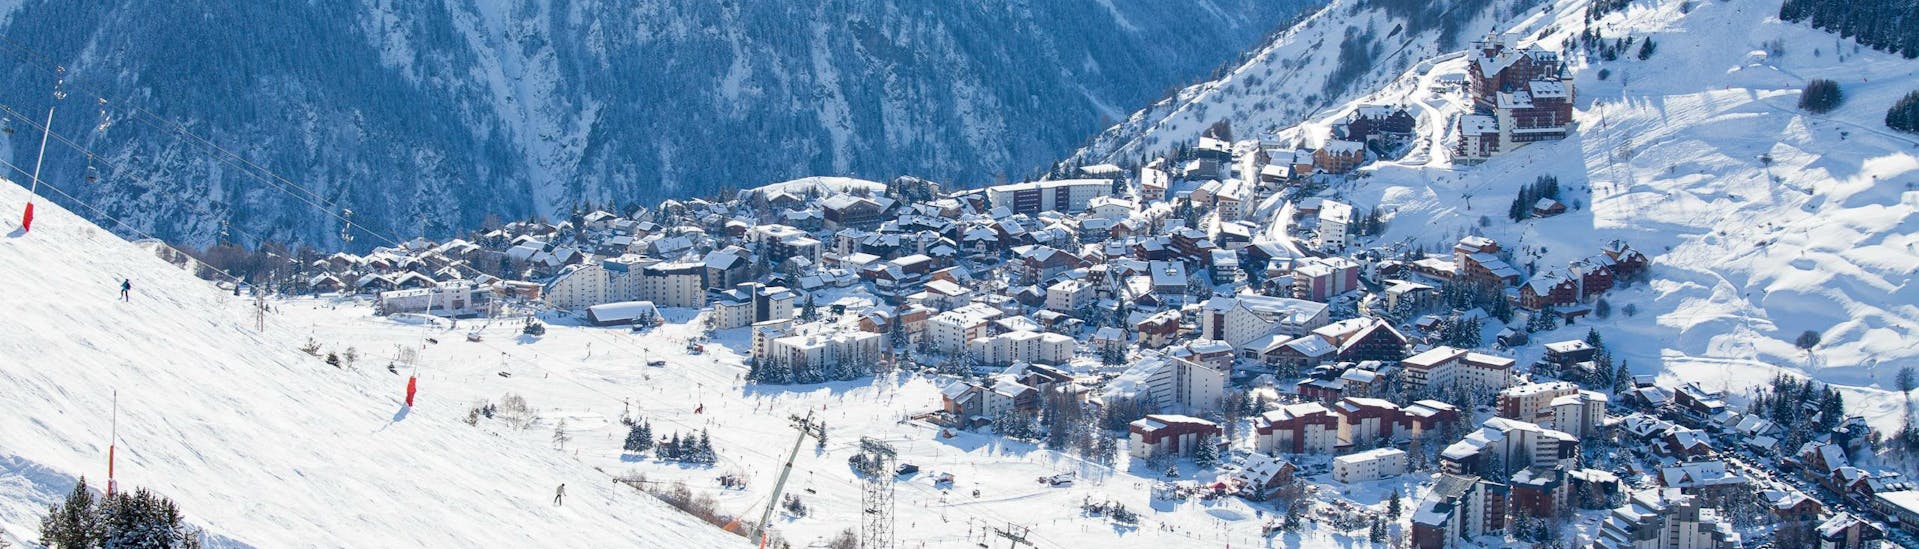 Ein Blick auf Frankreichs zweitältestes Skigebiet Les Deux Alpes, wo örtliche Skischulen an alle die das Skifahren lernen wollen Skikurse anbieten.